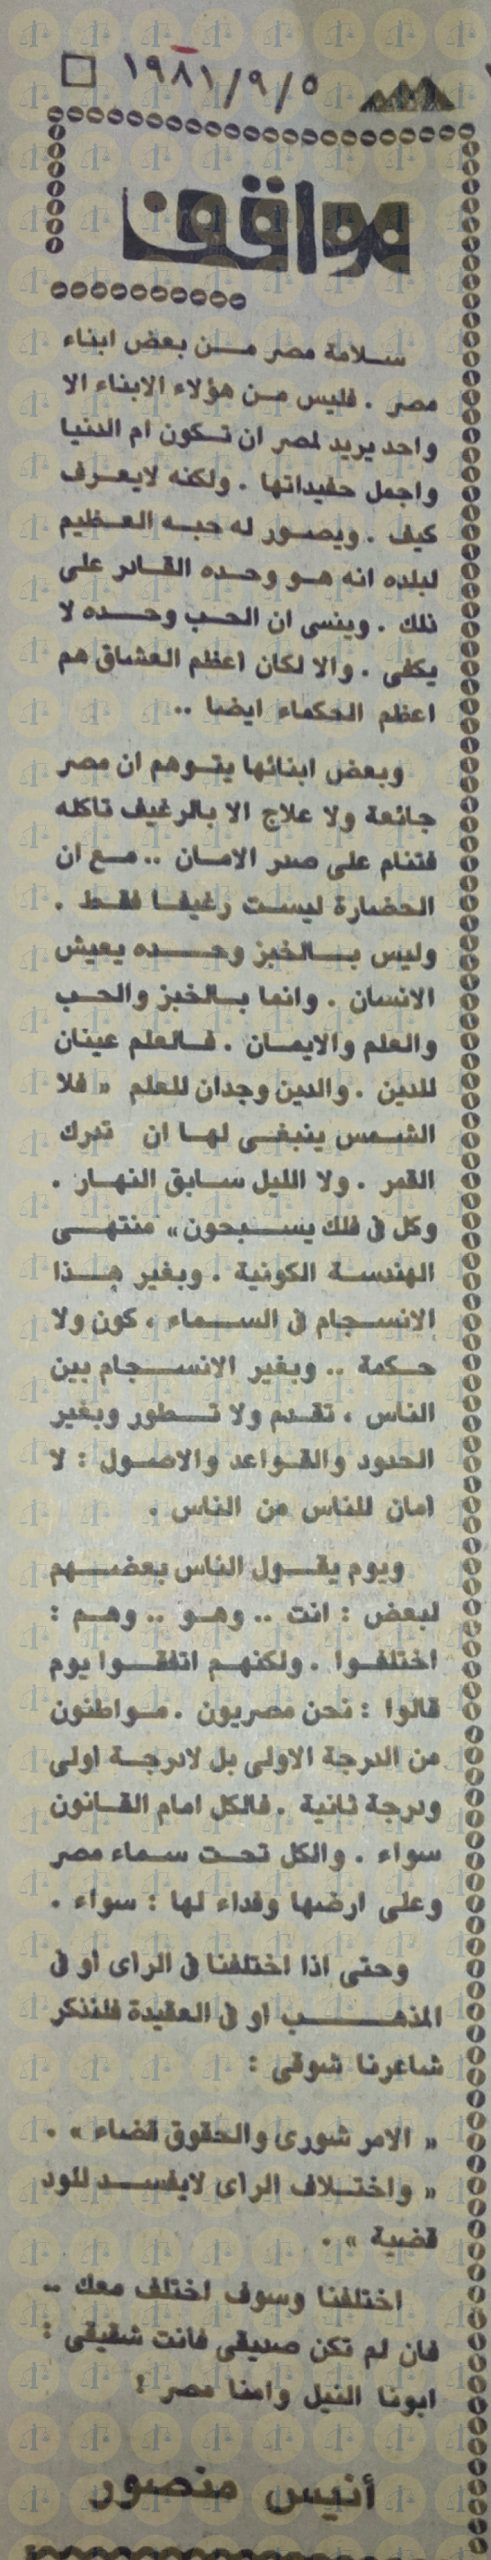 مقال أنيس منصور يوم 5 سبتمبر 1981